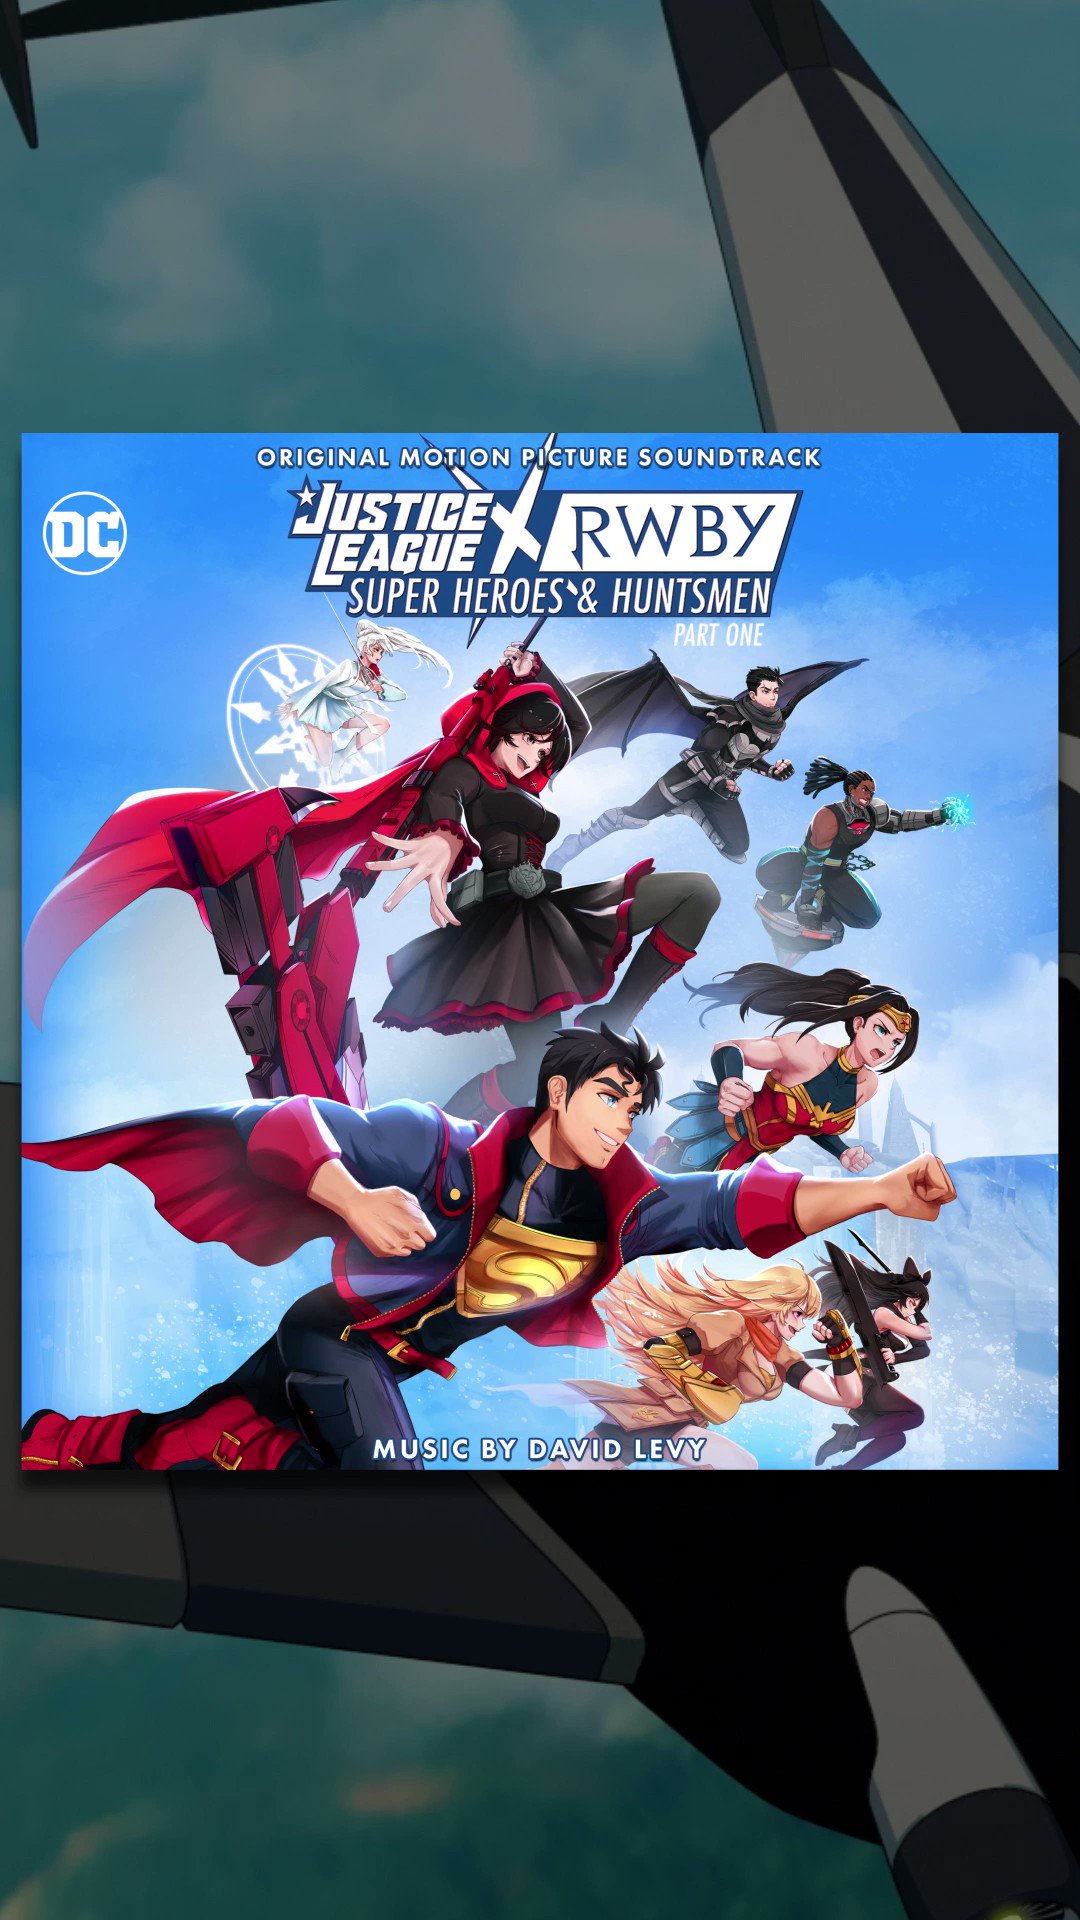 JUSTICE LEAGUE OST - Justice League: Original Motion Picture Soundtrack -   Music